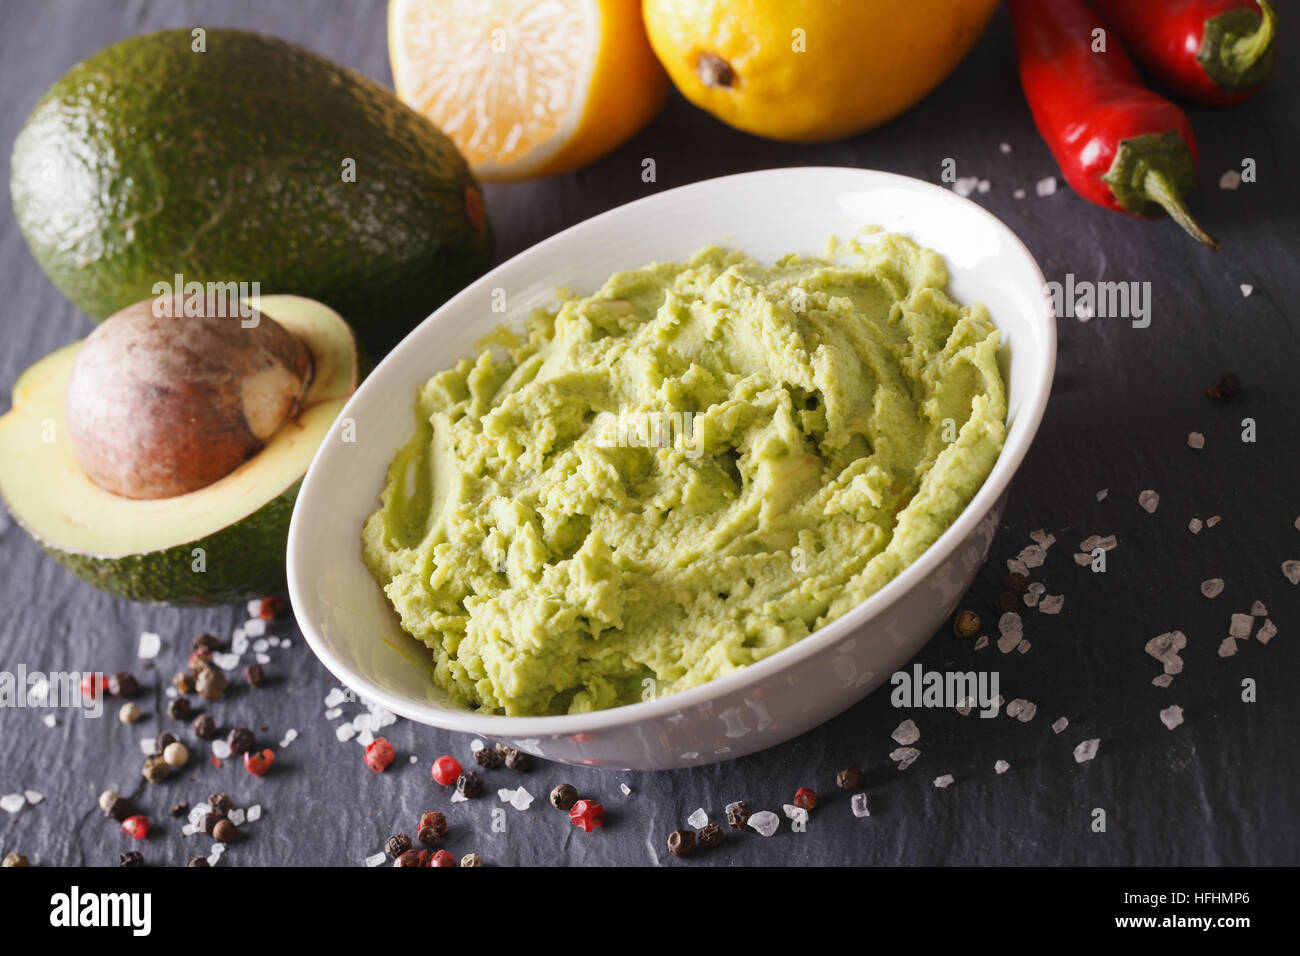 Tradizionale salsa guacamole con ingredienti di close-up sul tavolo. Posizione orizzontale Foto Stock